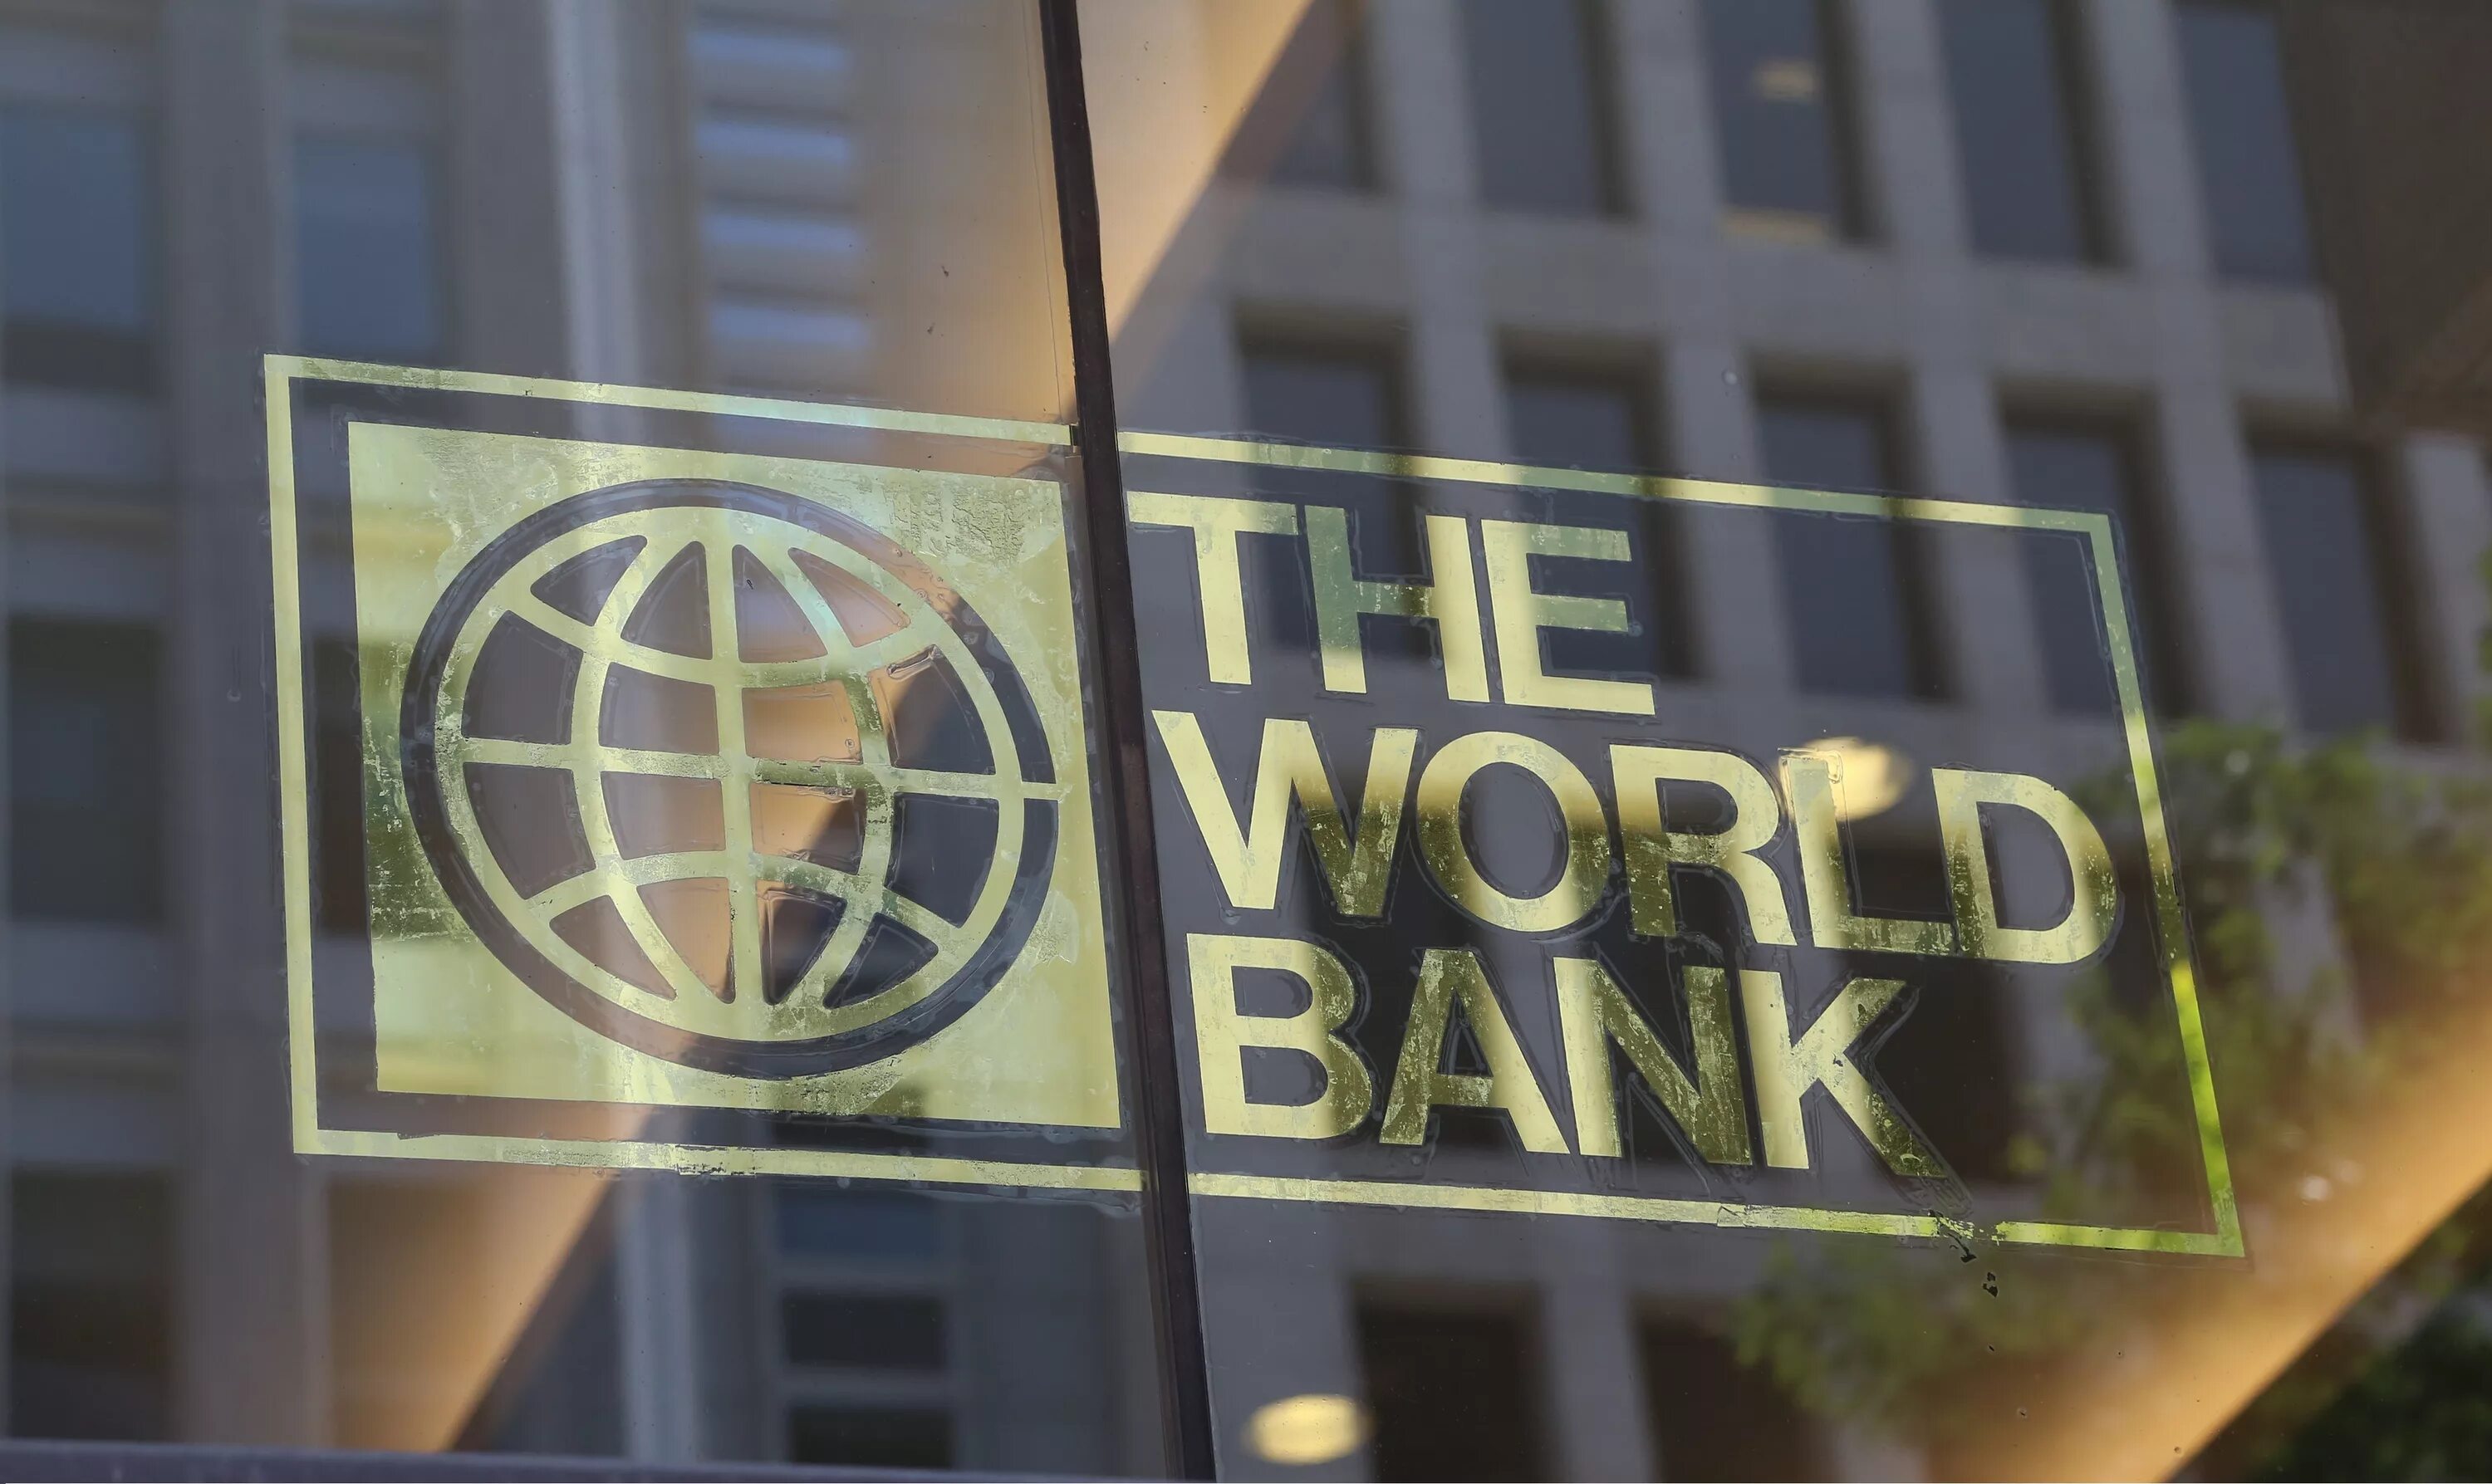 Фонд всемирный банк. Всемирный банк. Всемирный мировой банк. Международный банк. Всемирный банк США.